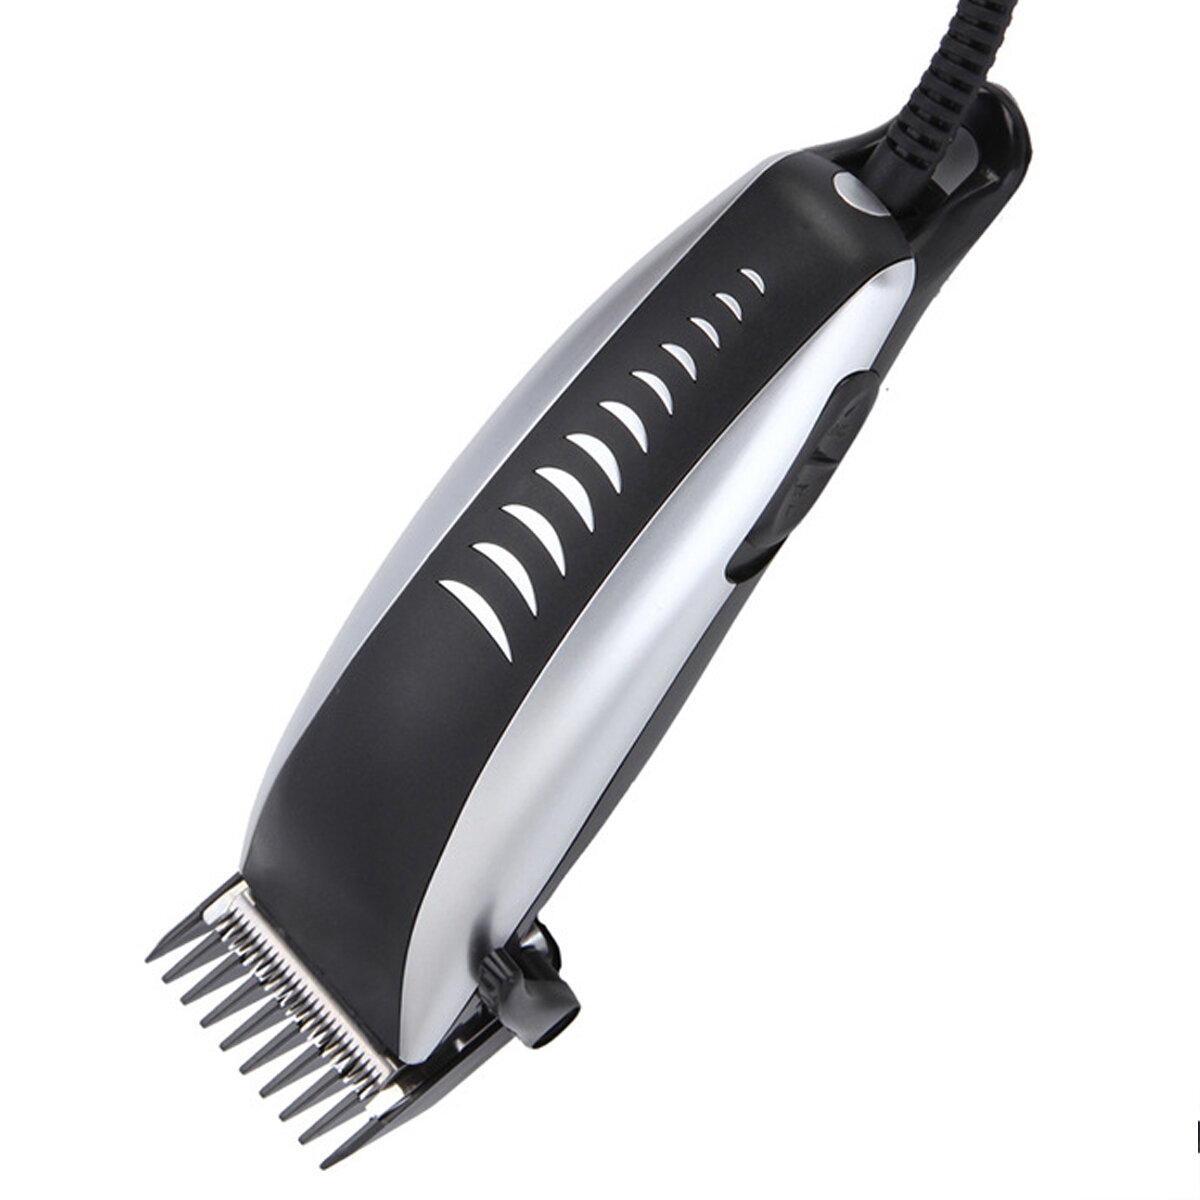 Electric Hair Trimmer Hair Cutting Men Kids Adjustable Hair Cutting Machine Home Clipper EU Plug